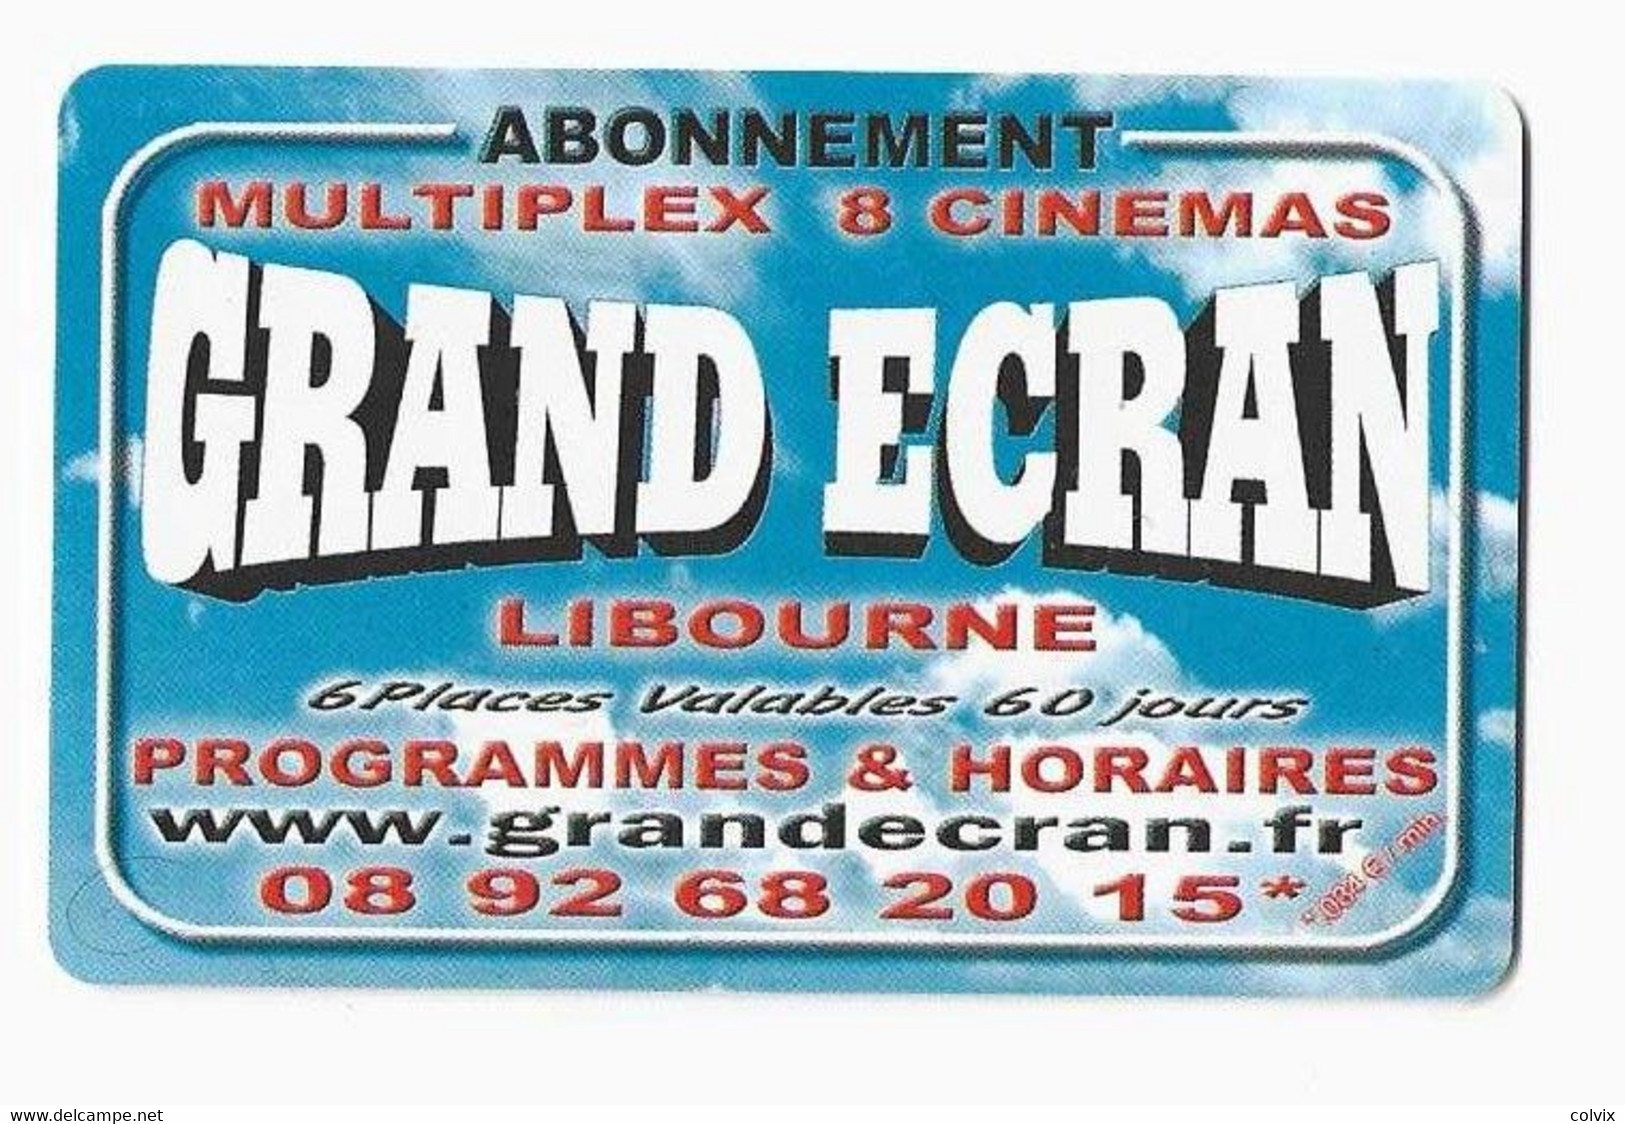 FRANCE CARTE CINEMA GRAND ECRAN LIBOURNE - Cinécartes